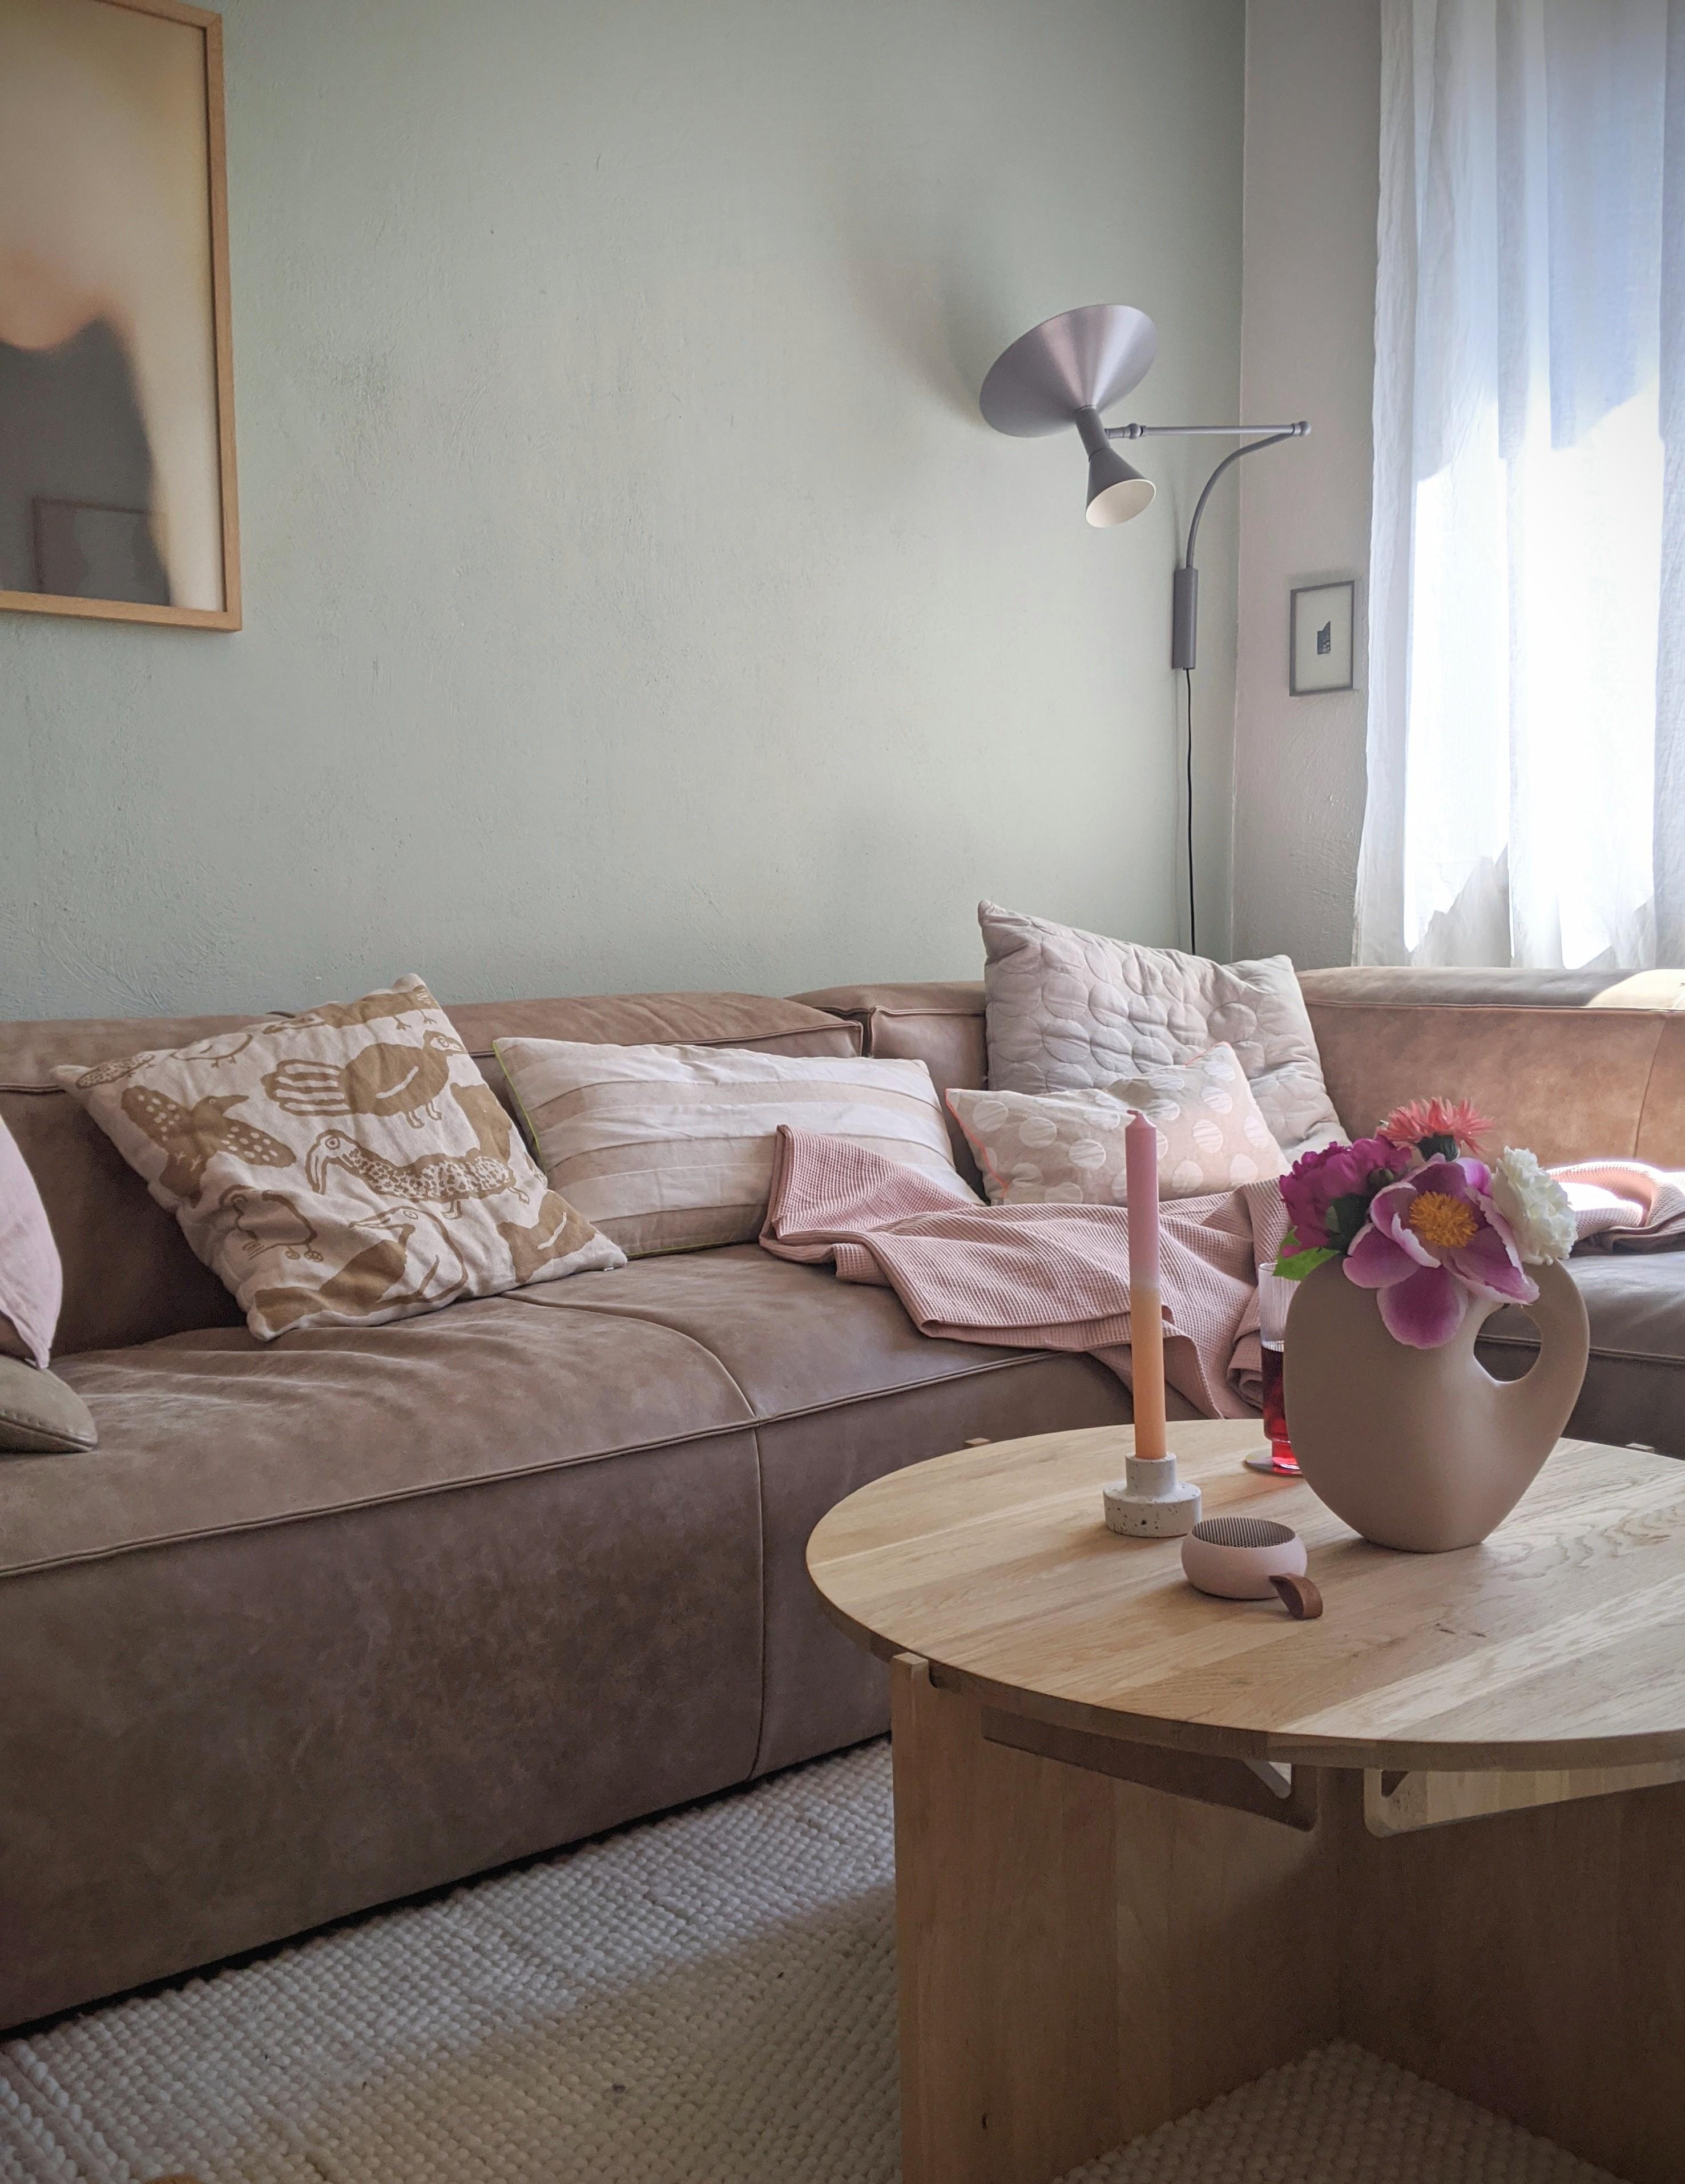 #living #livingroom #interiordesign #hygge #inneneinrichtung #homestory #altbauliebe #zuhause 